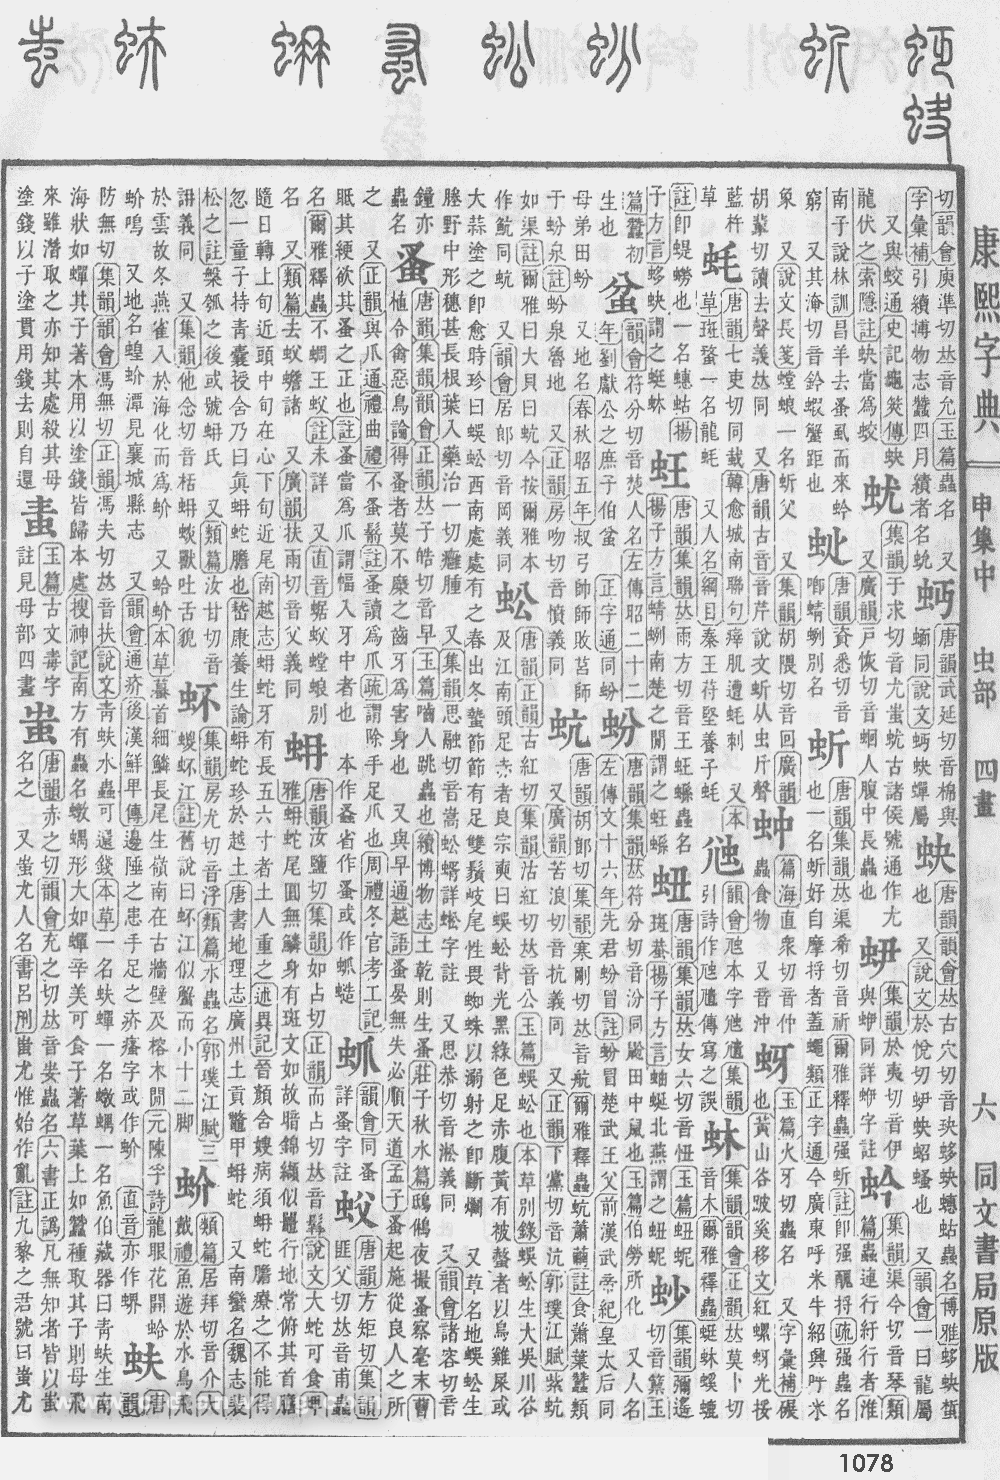 康熙字典掃描版第1078頁